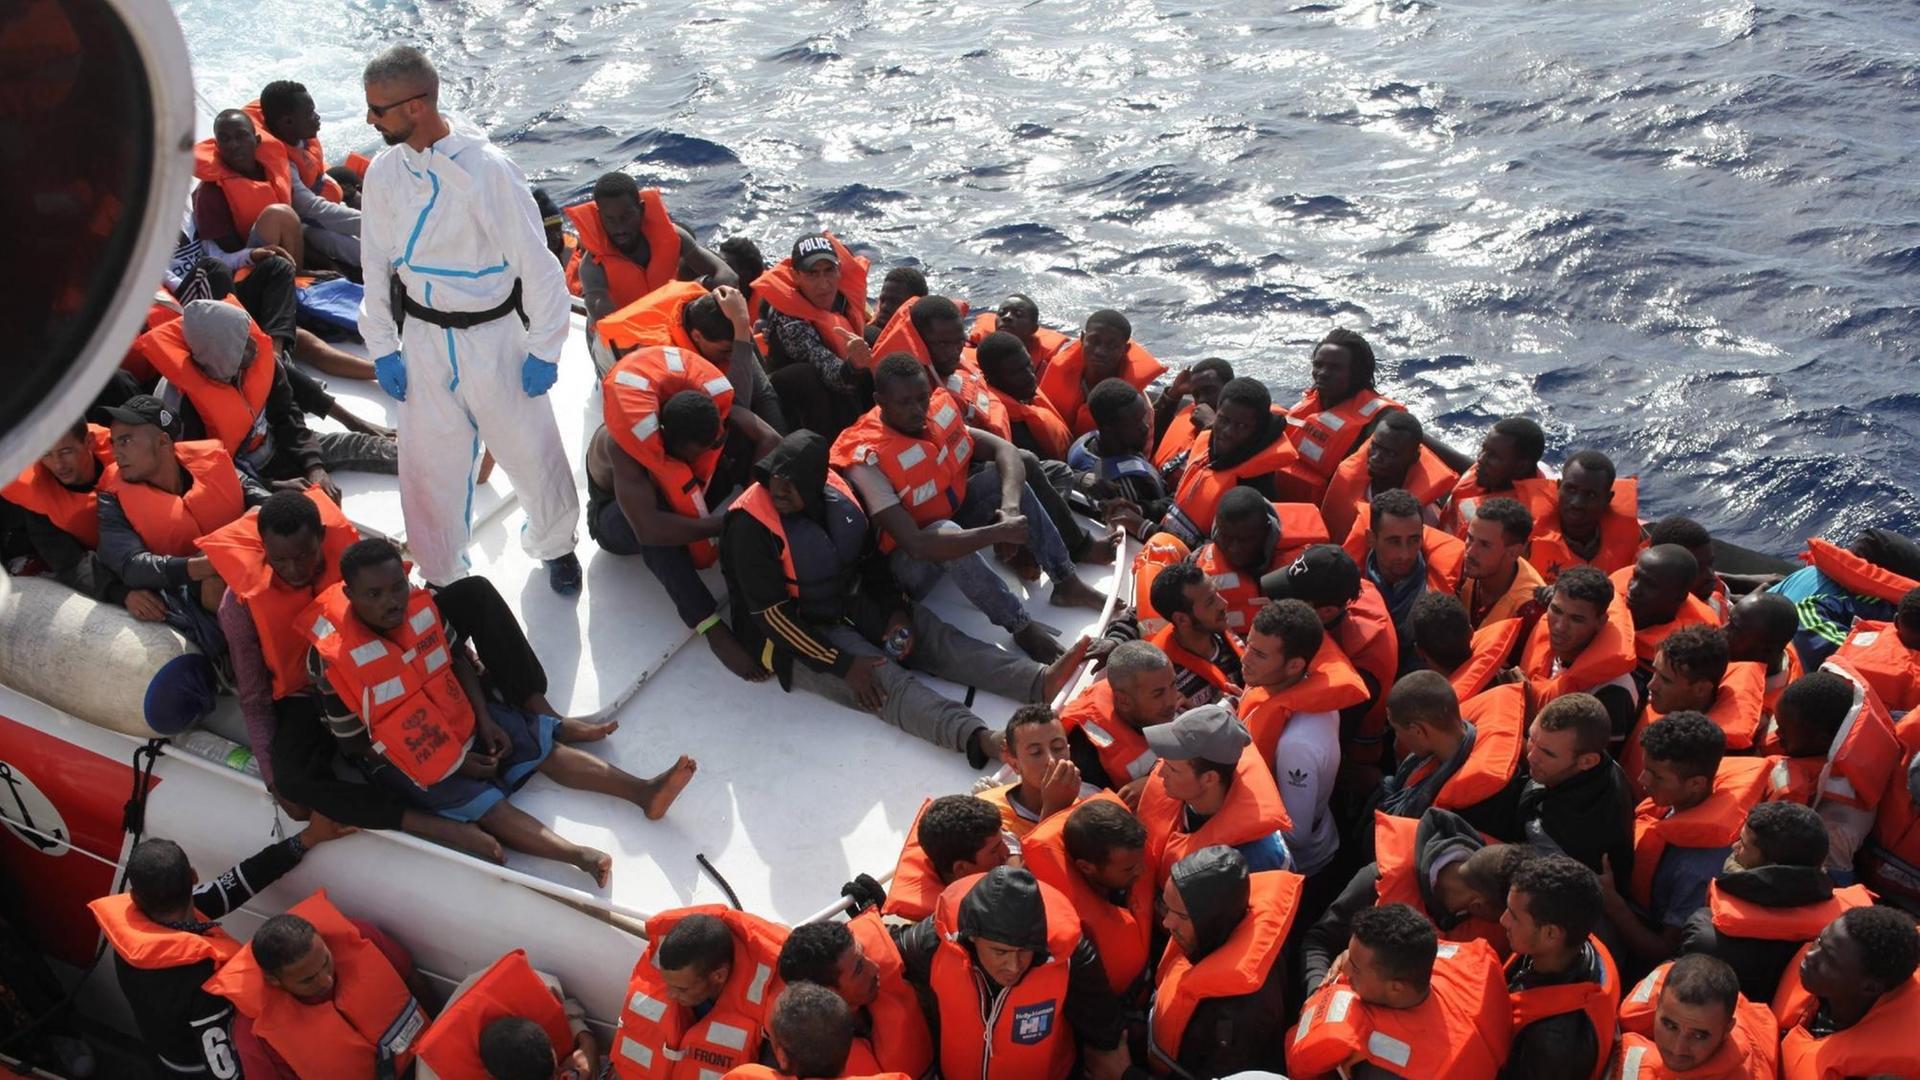 Viele Flüchtlinge sitzen mit Rettungs-Westen in einem Boot.